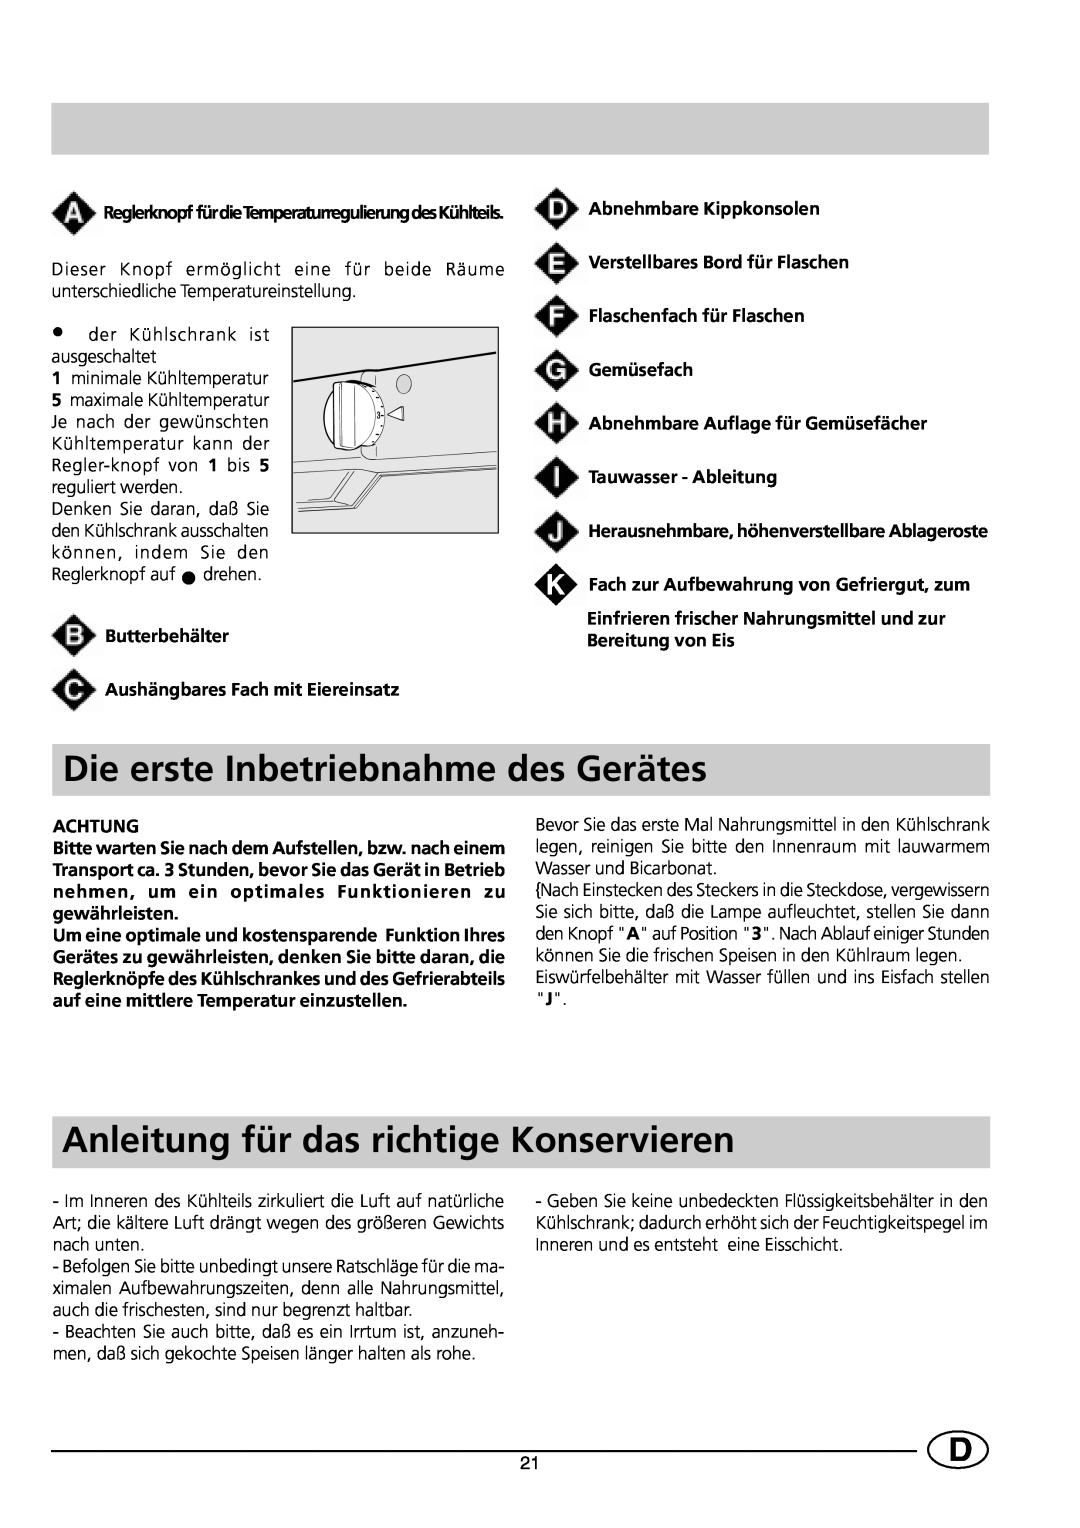 Smeg FR150A manual Die erste Inbetriebnahme des Gerätes, Anleitung für das richtige Konservieren, Achtung 